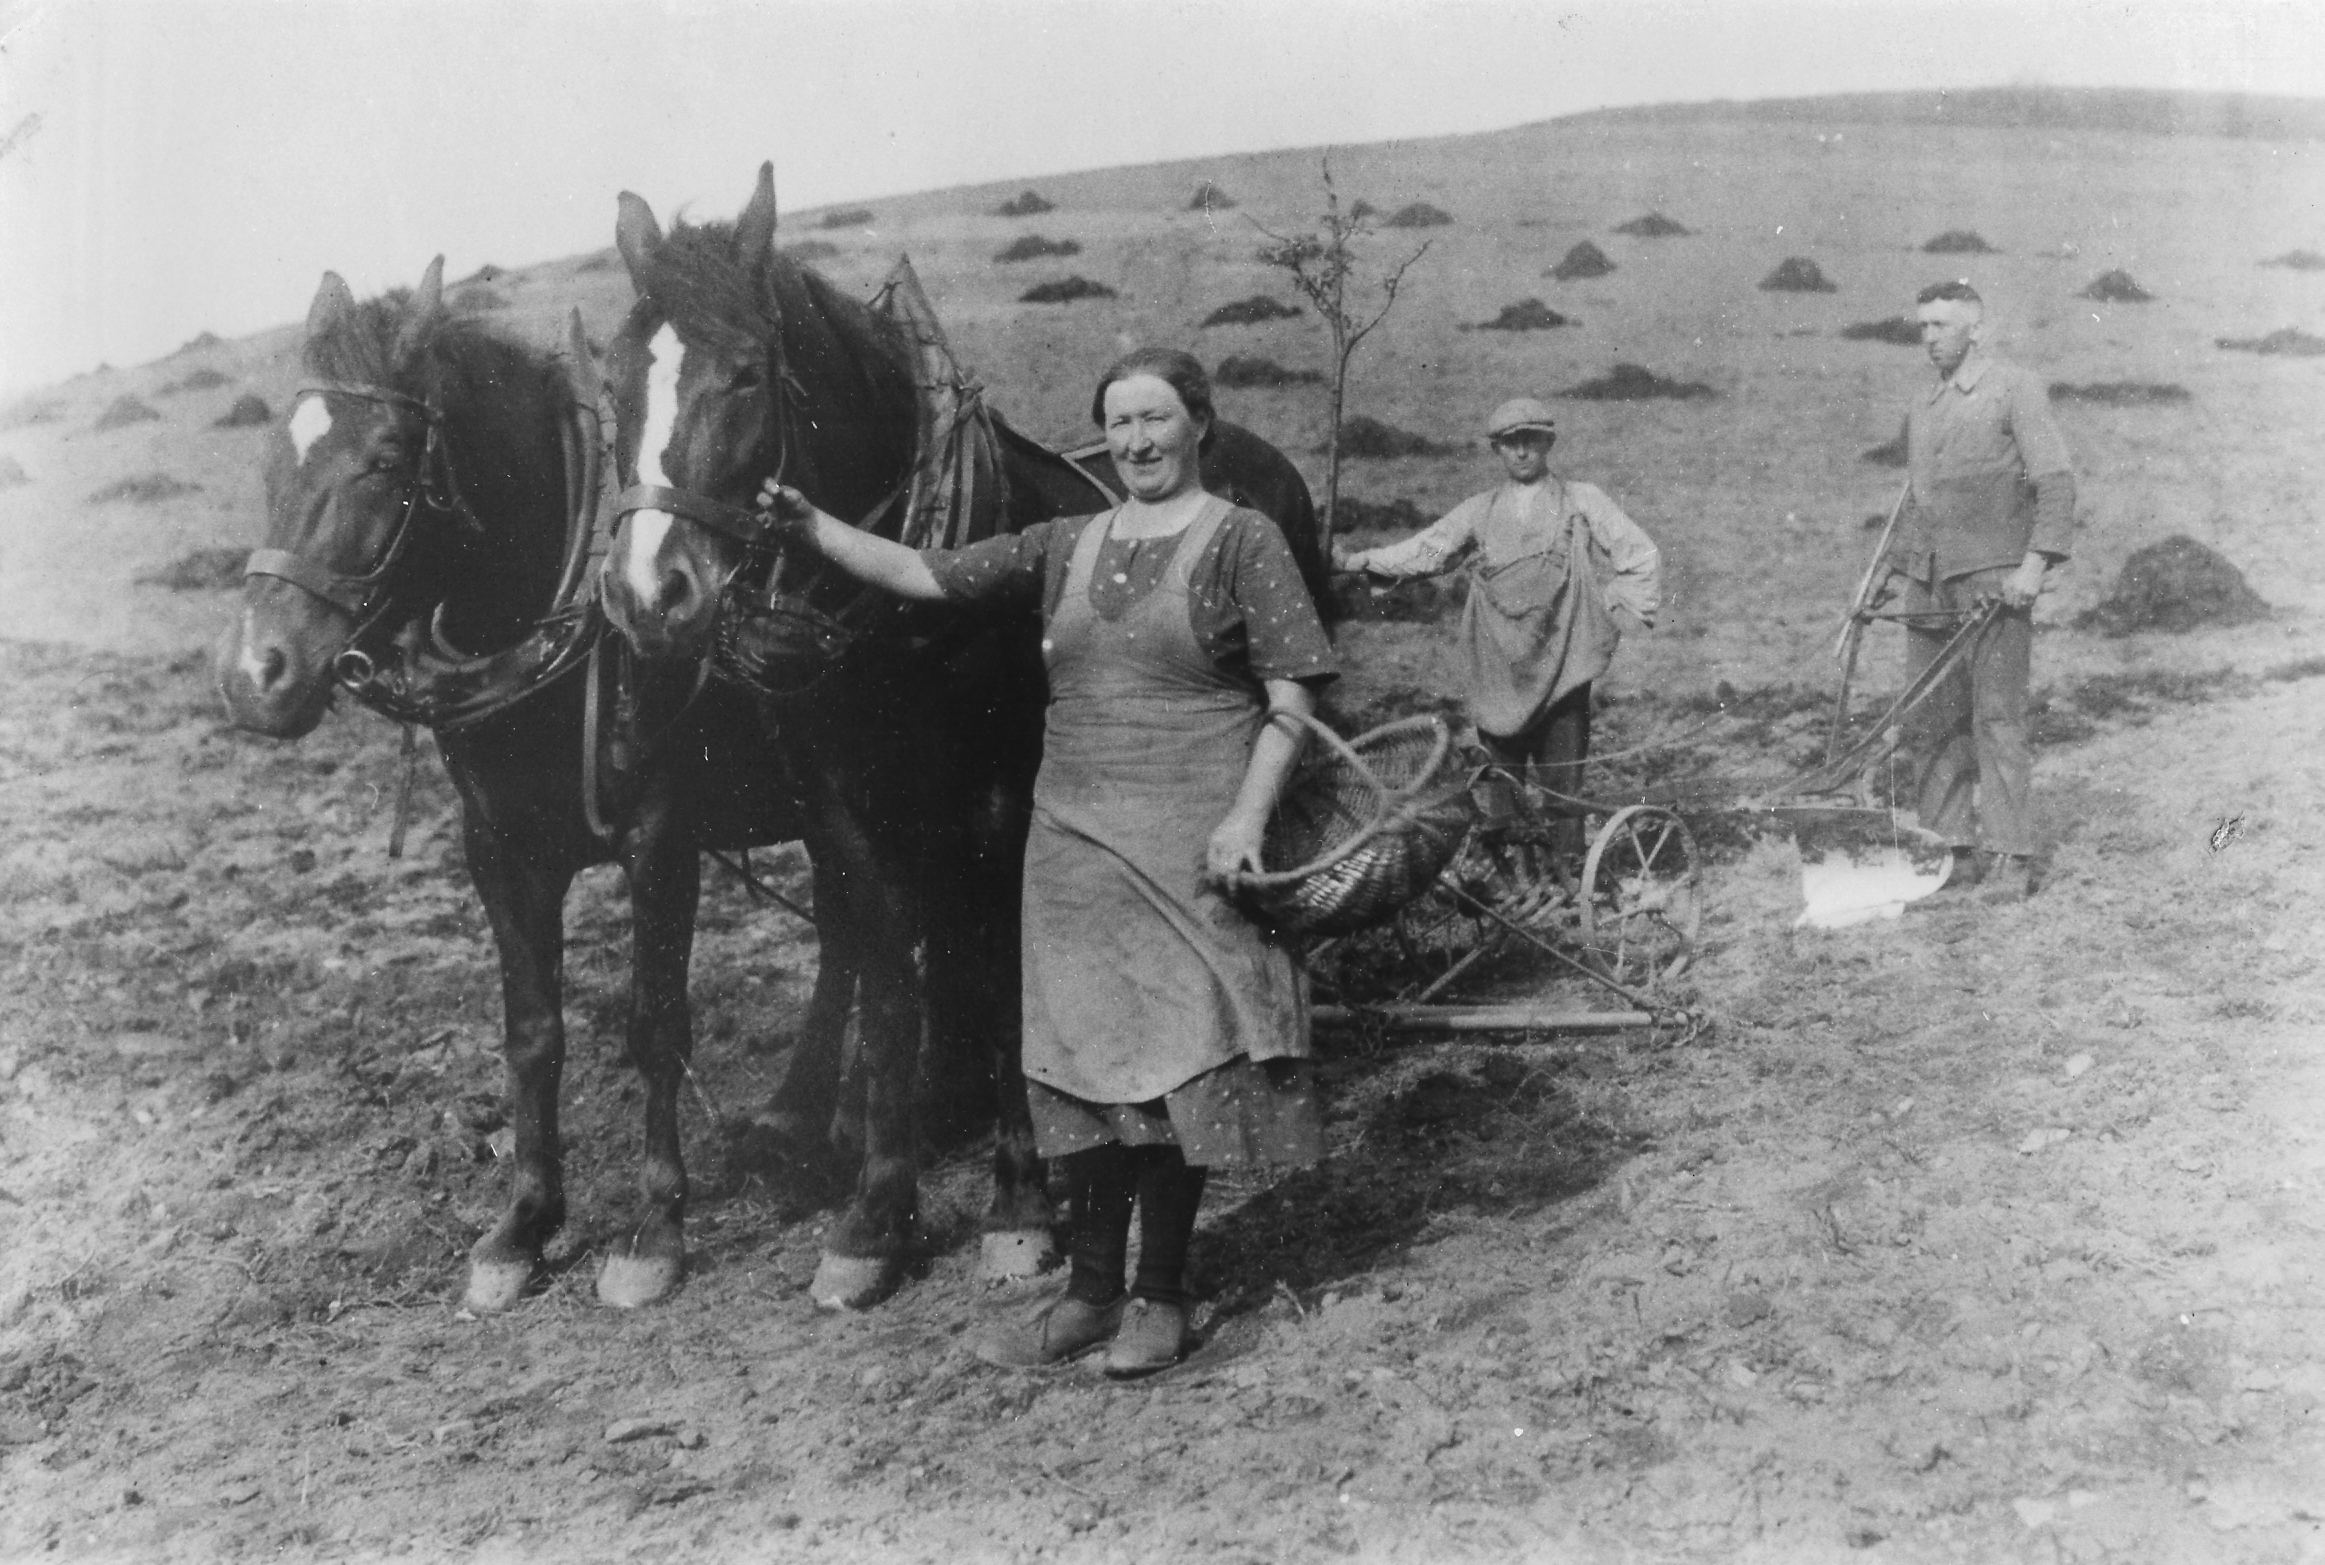 Zu sehen ist eine Frau und zwei Männer welche mit einem Pflug, gezogen von zwei Pferden, arbeiten. (S/W Aufnahme)